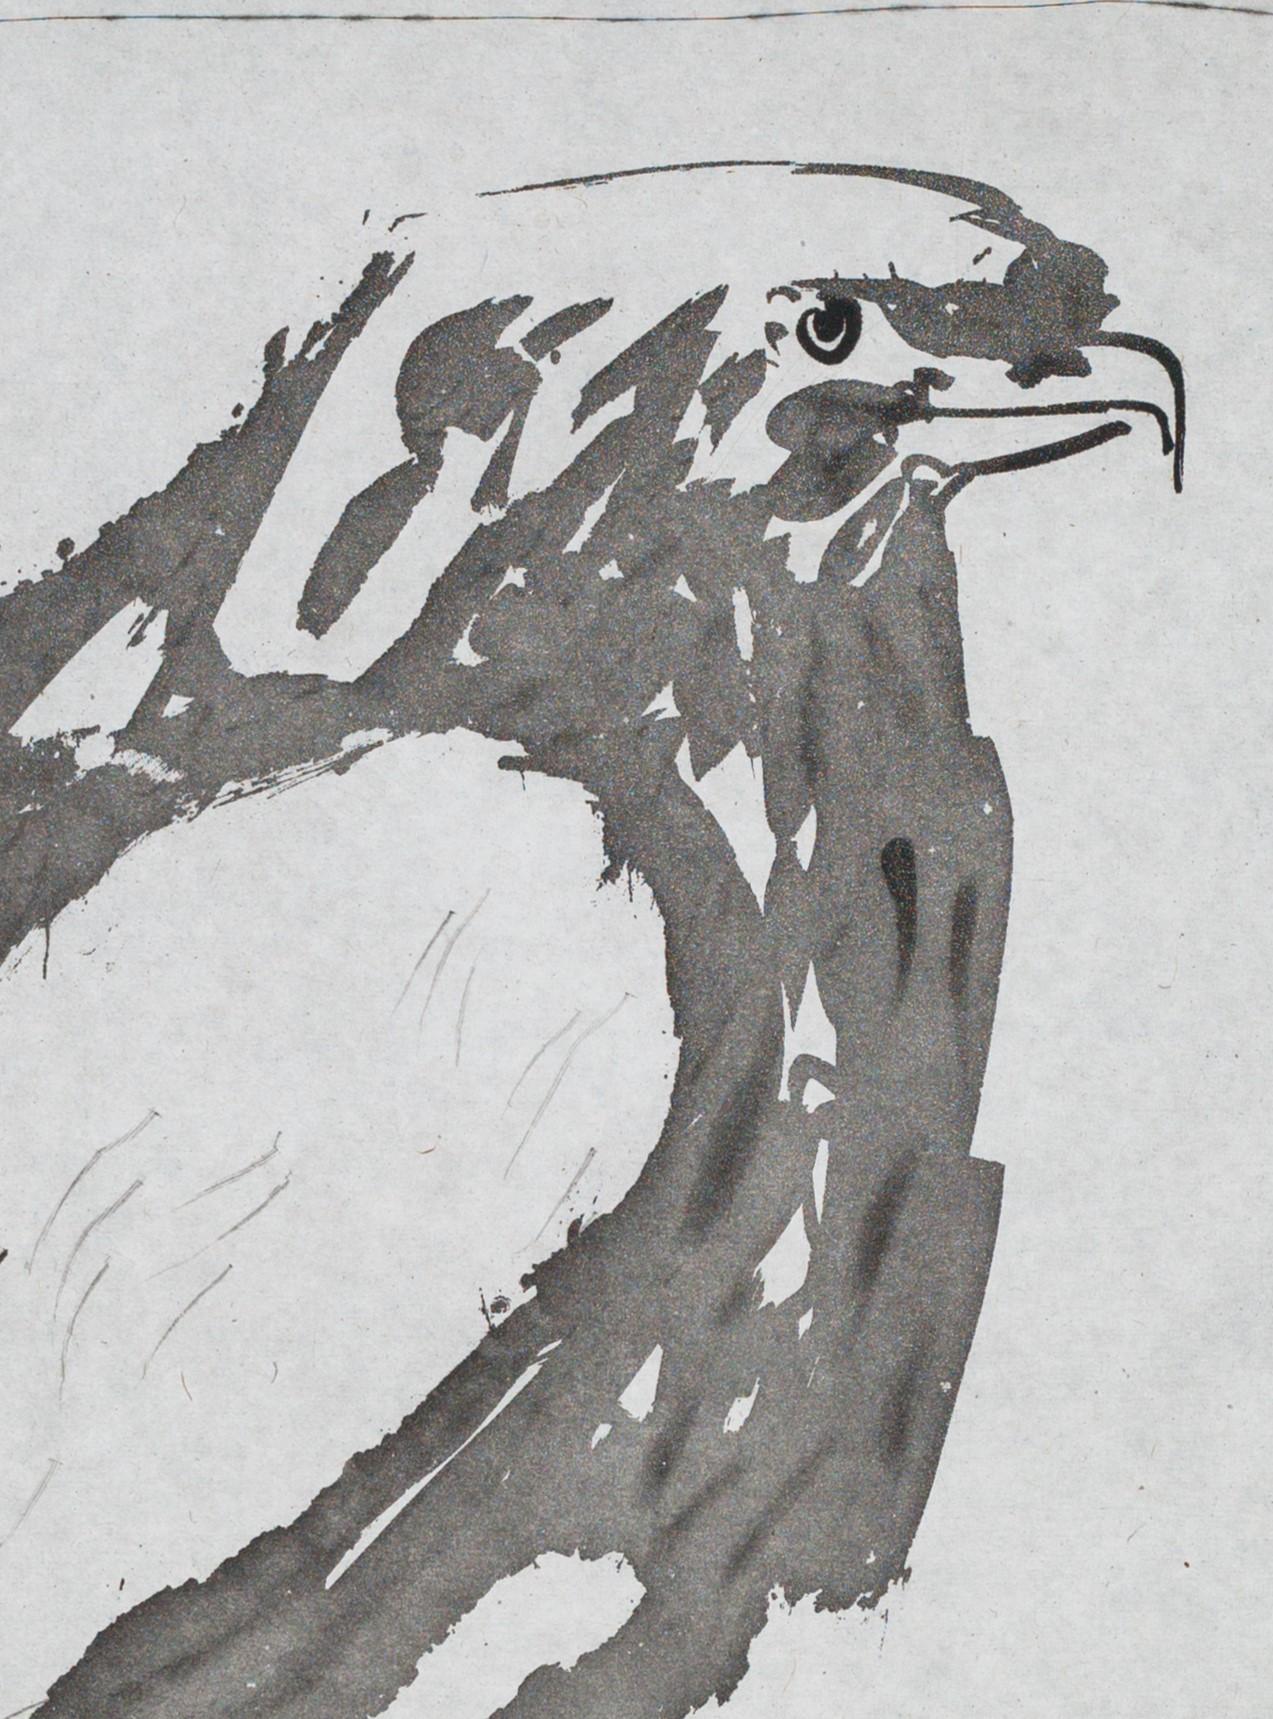 L'Aigle blanc est une gravure à l'aquatinte et à la pointe sèche sur chine provenant de l'un des exemplaires de luxe de la série Histoire naturelle - Textes de Buffon, publiée par Picasso en 1942. La taille de l'image est de 10,5 x 8,15 pouces. Elle